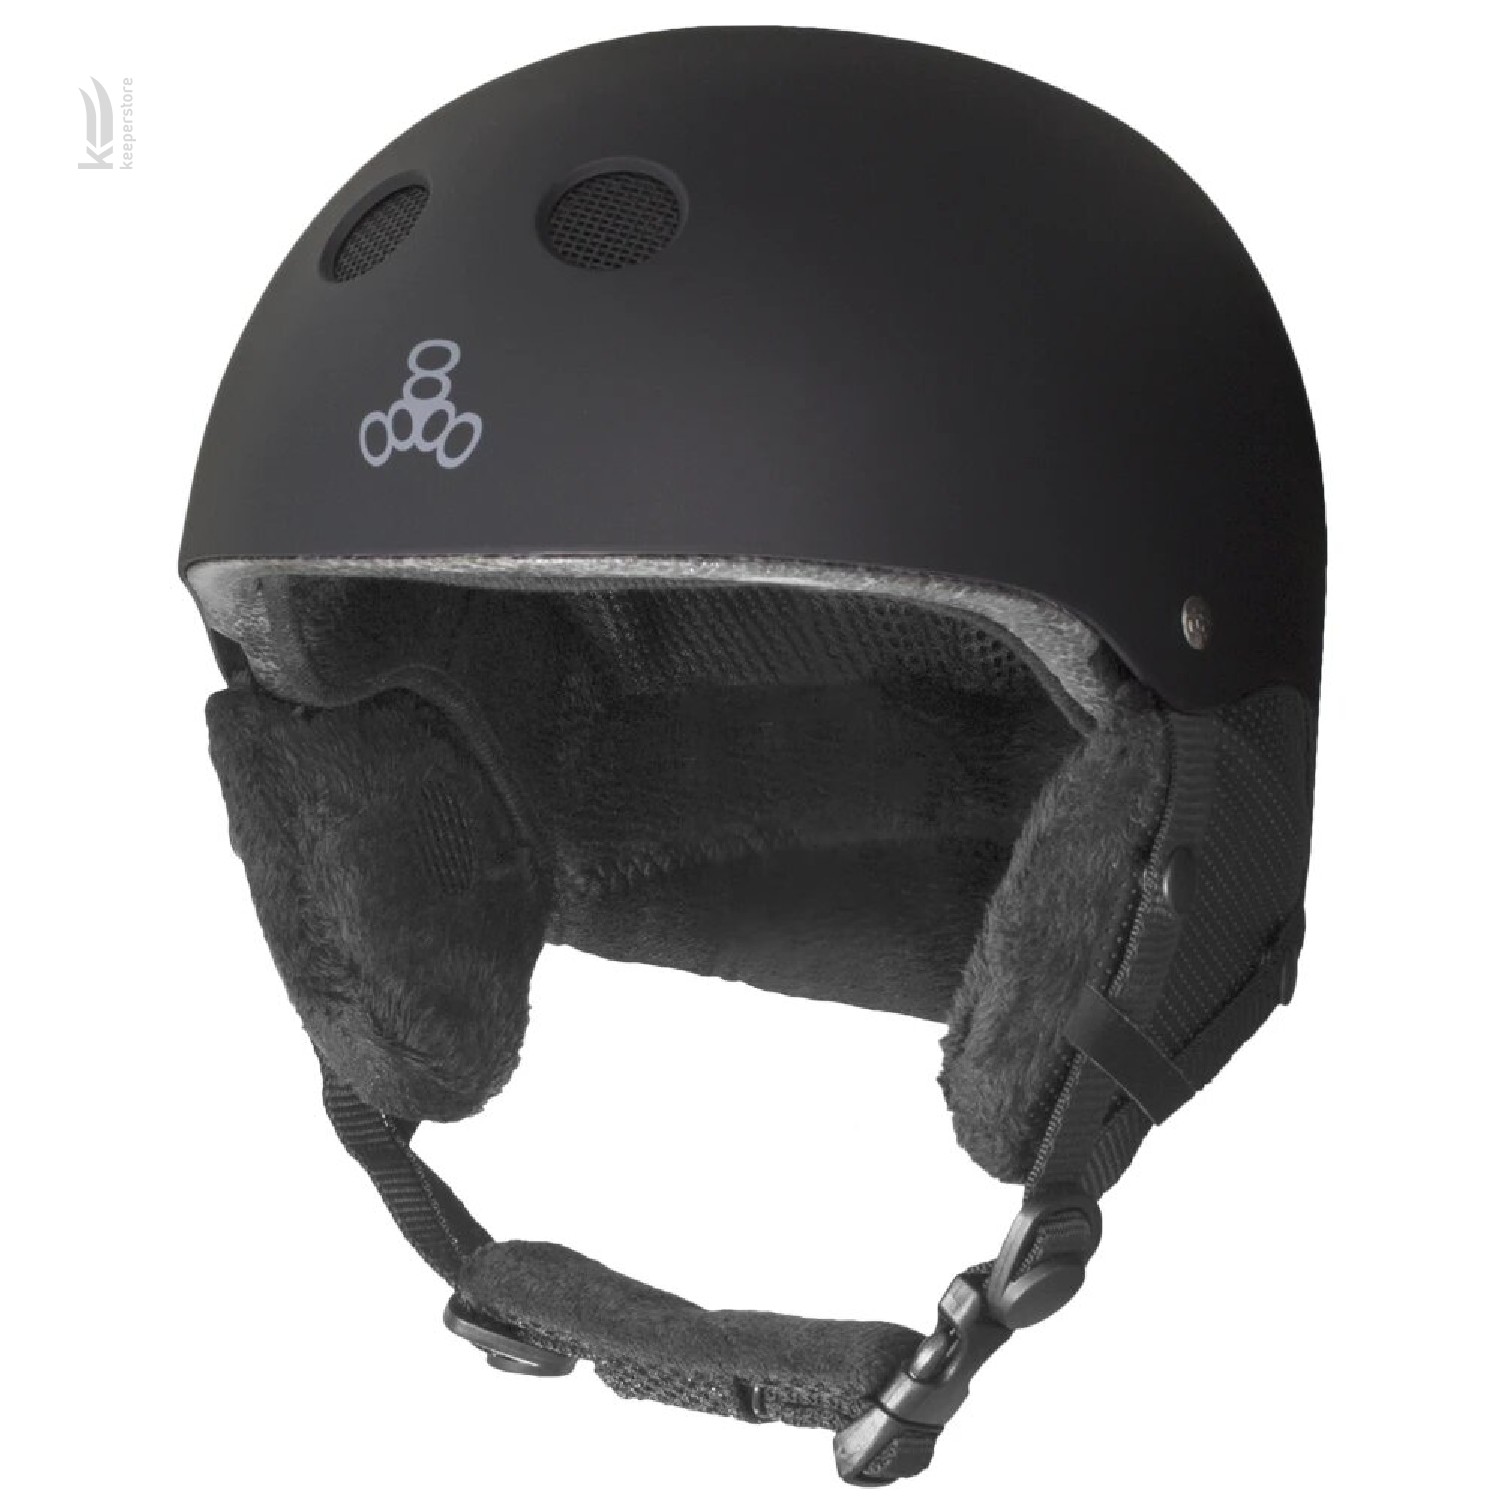 Купить шлем горнолыжный Triple8 Halo Snow Standart Black Rubber (S/M) в Киеве